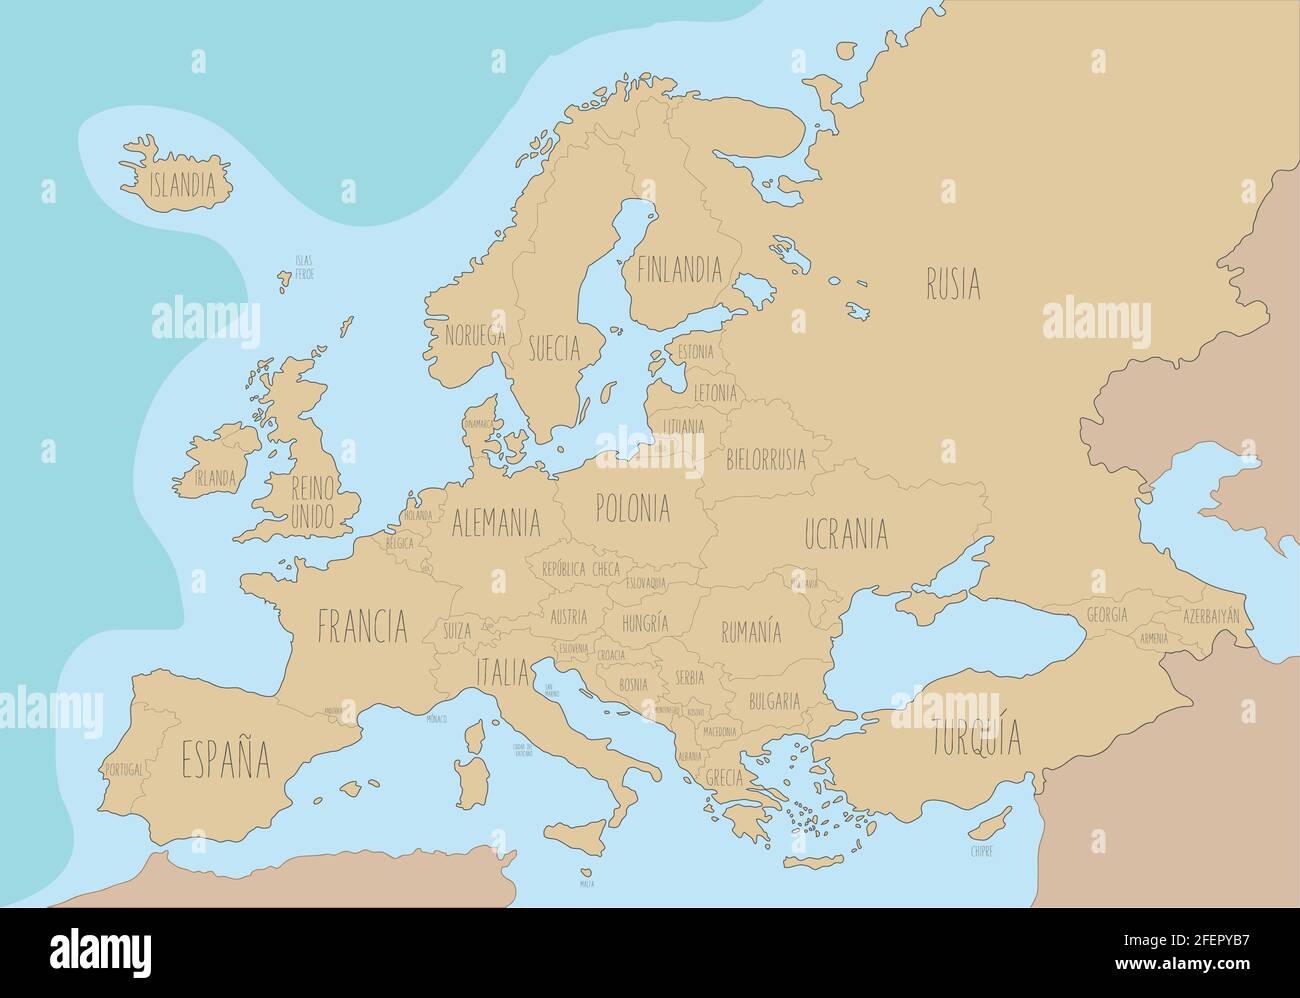 Politische Landkarte von Europa mit Namen auf Spanisch. Vektorgrafik Stock Vektor